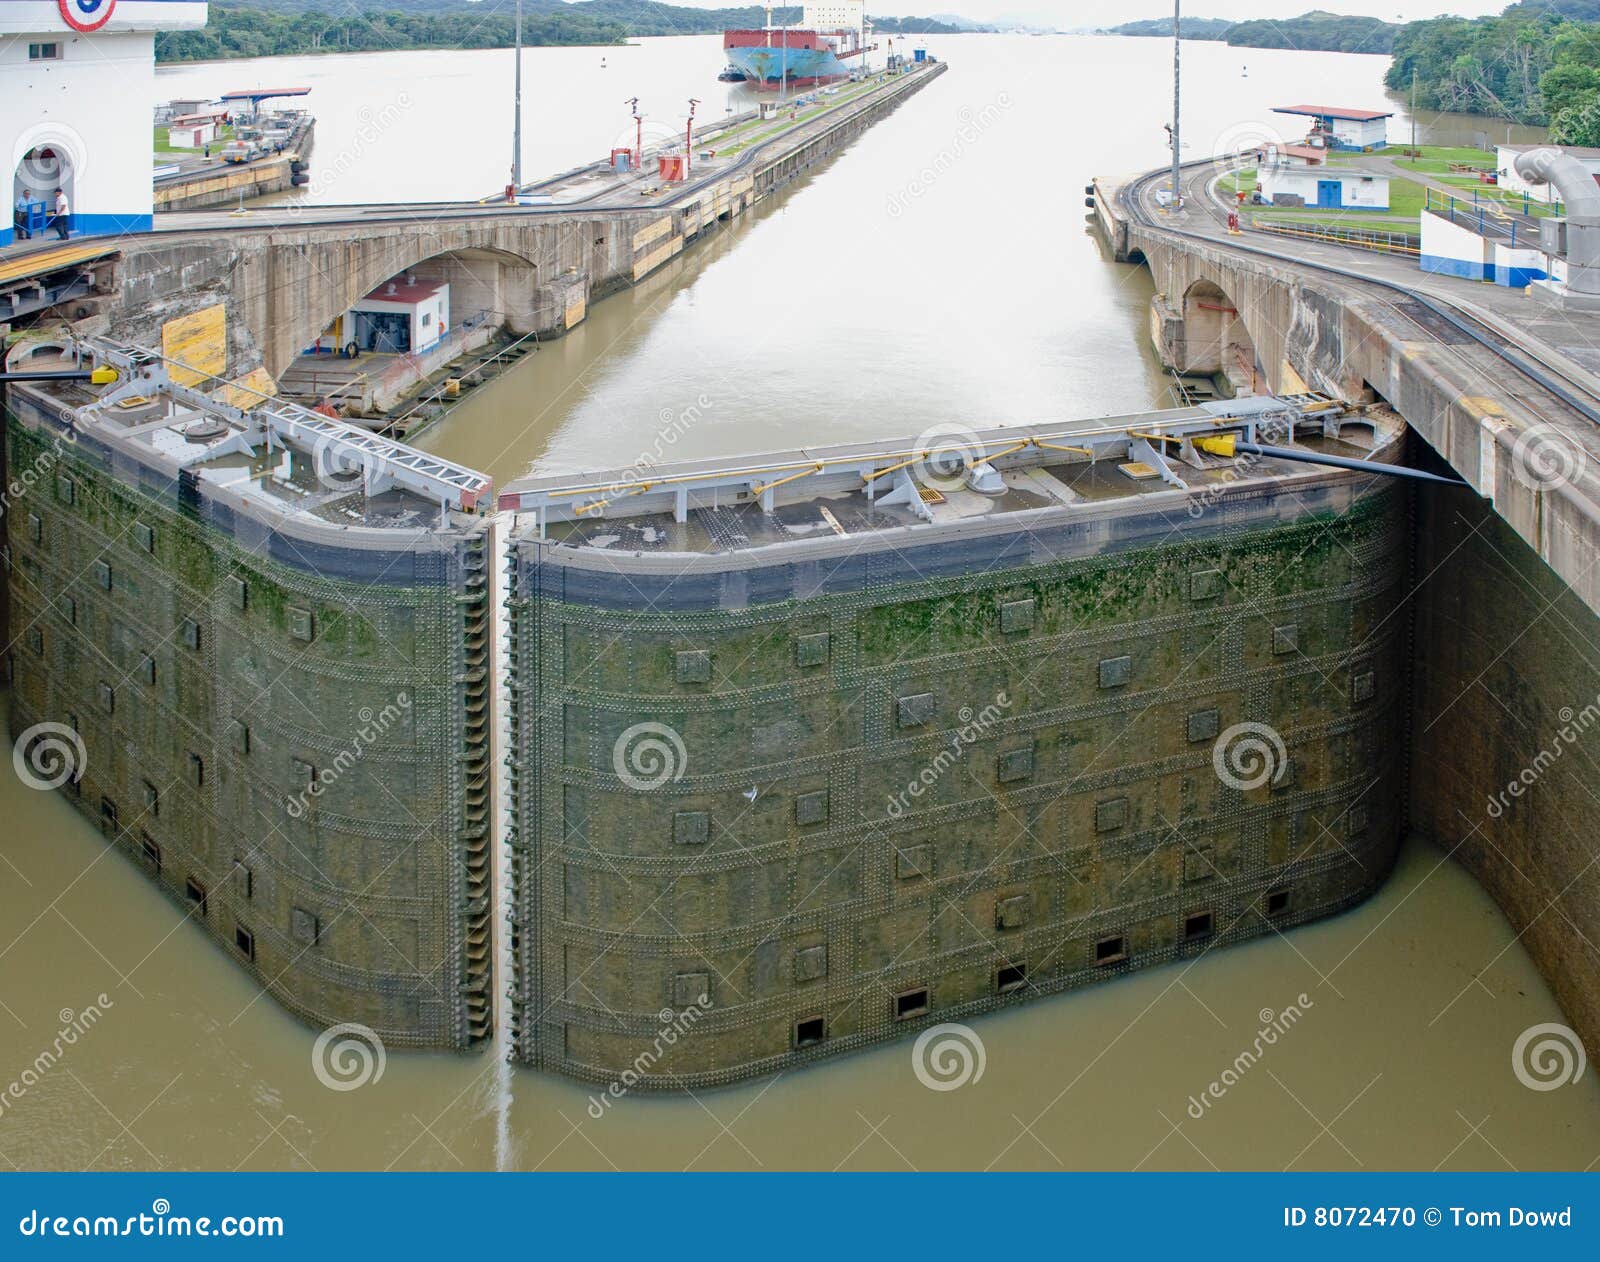 panama canal lock gate